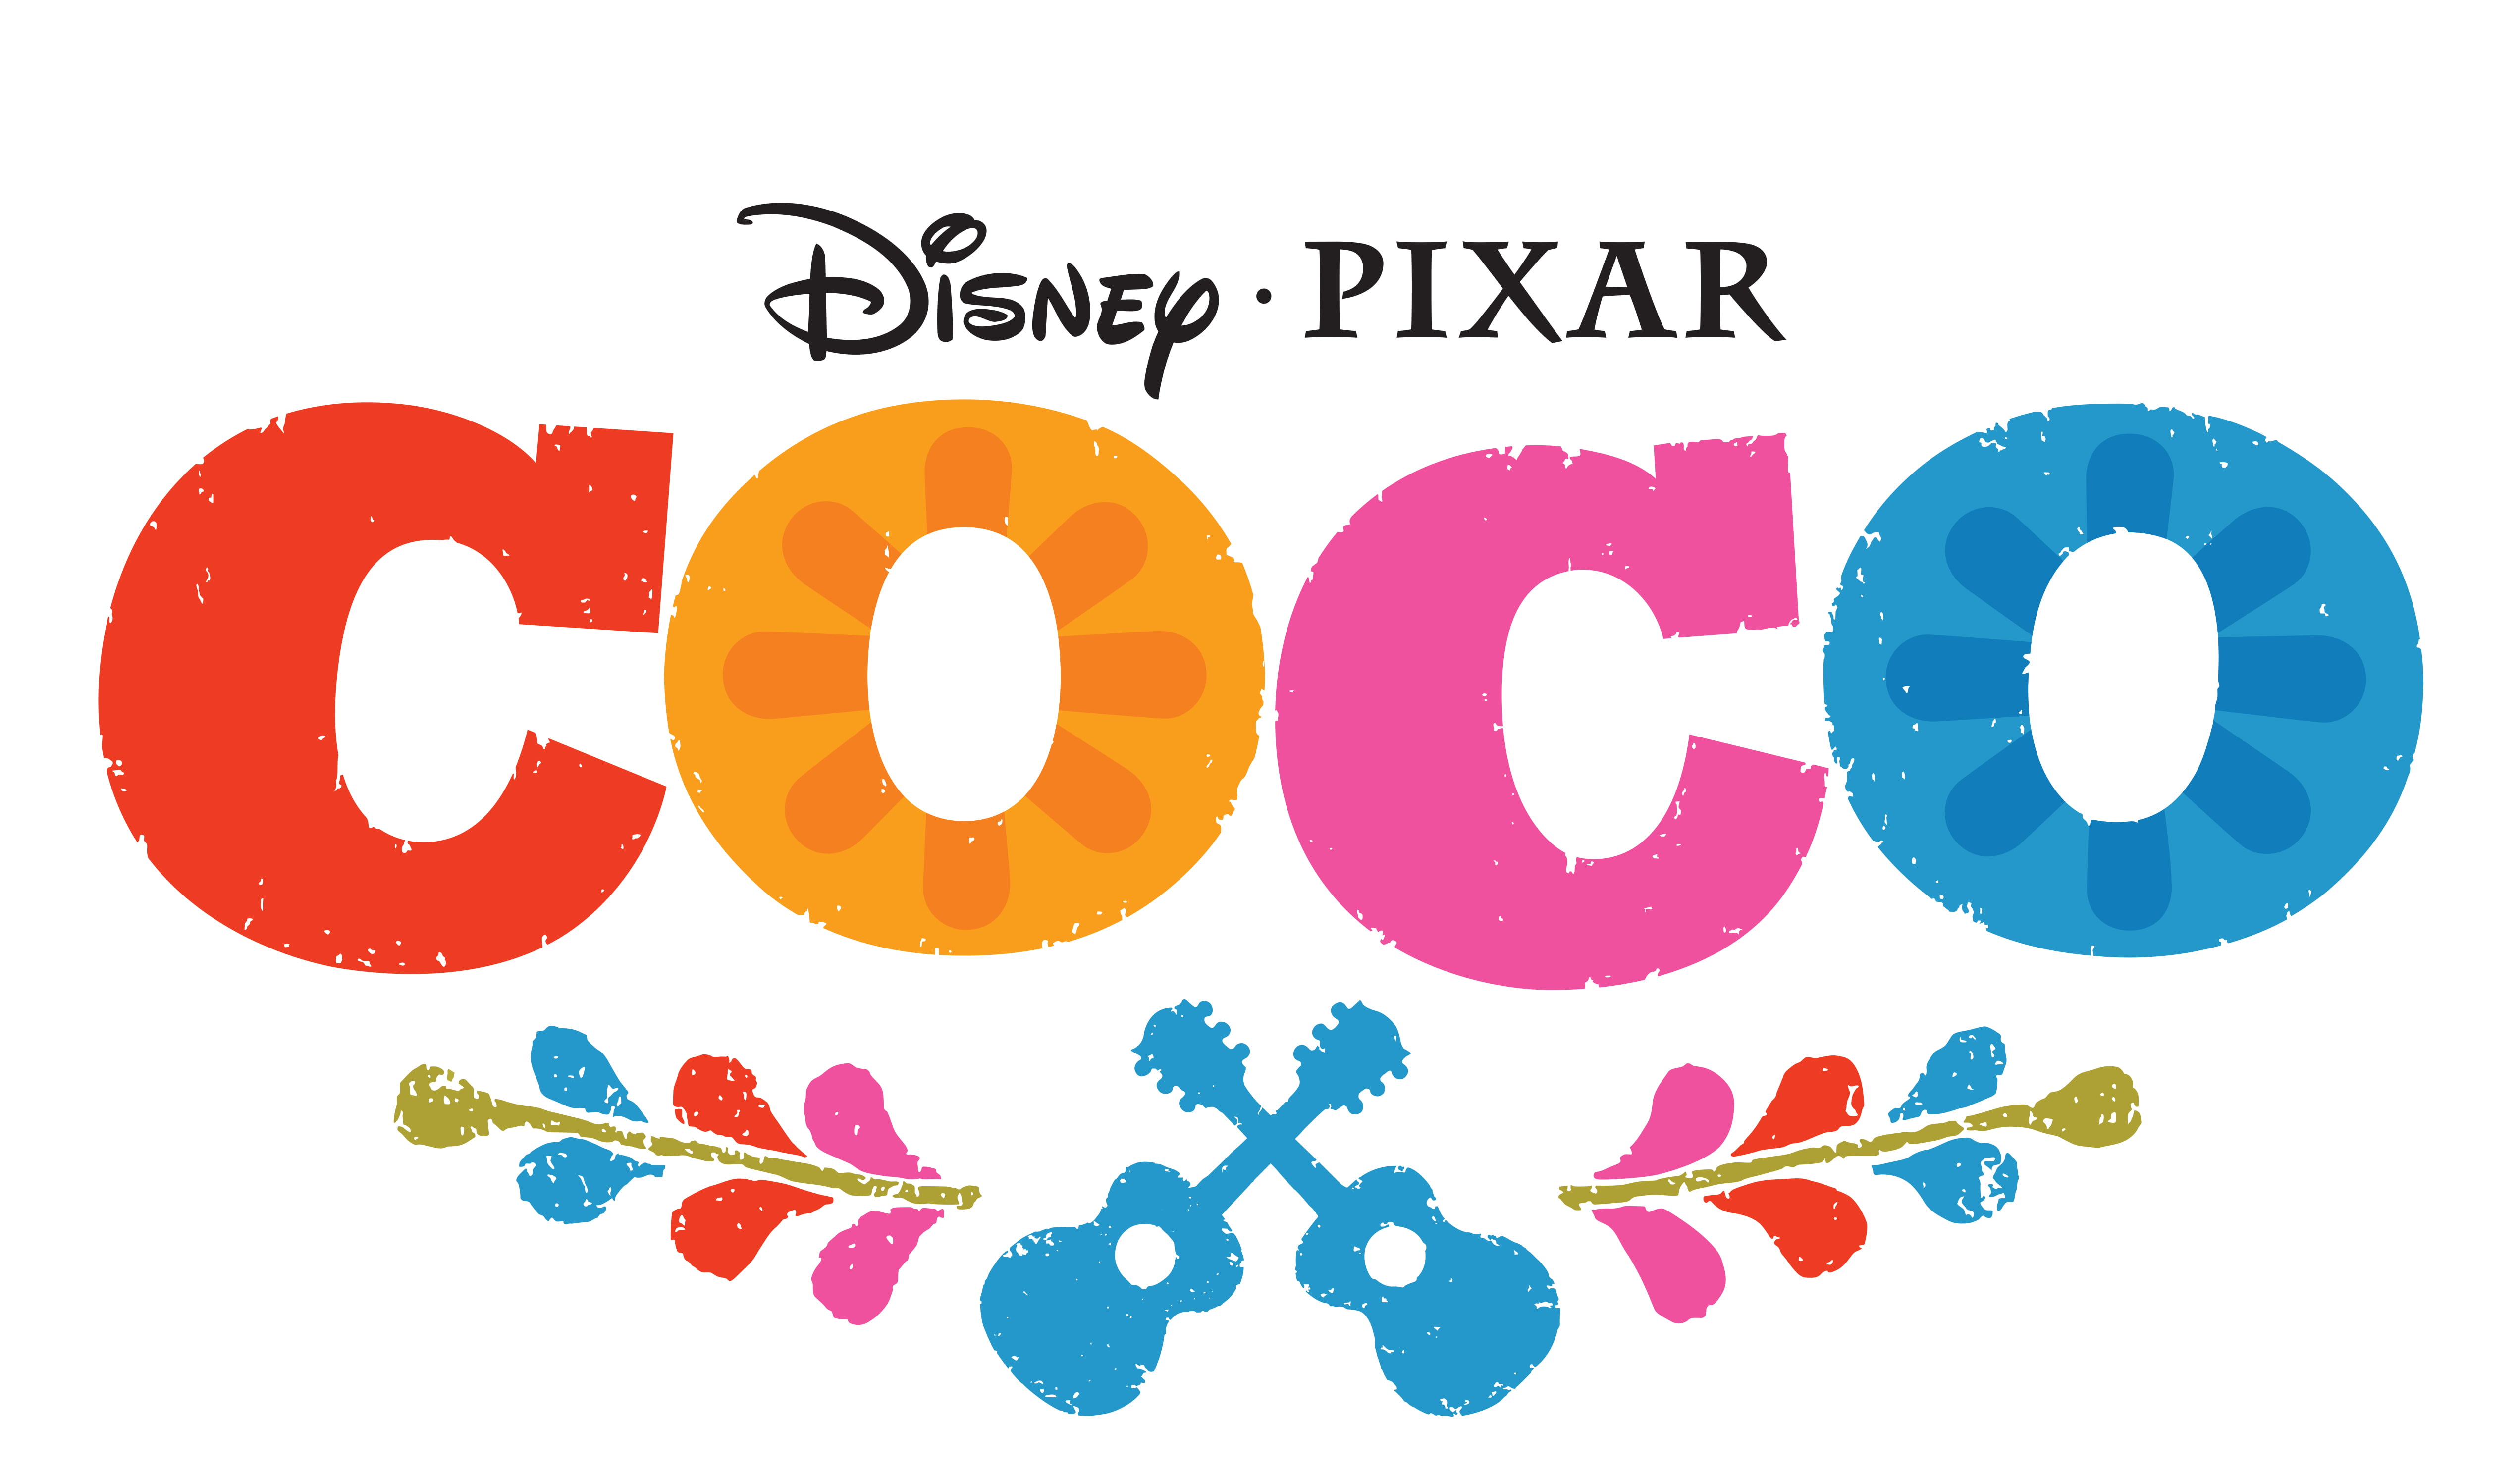 Disney Pixar COCO HD wallpaper | Wallpaper Flare